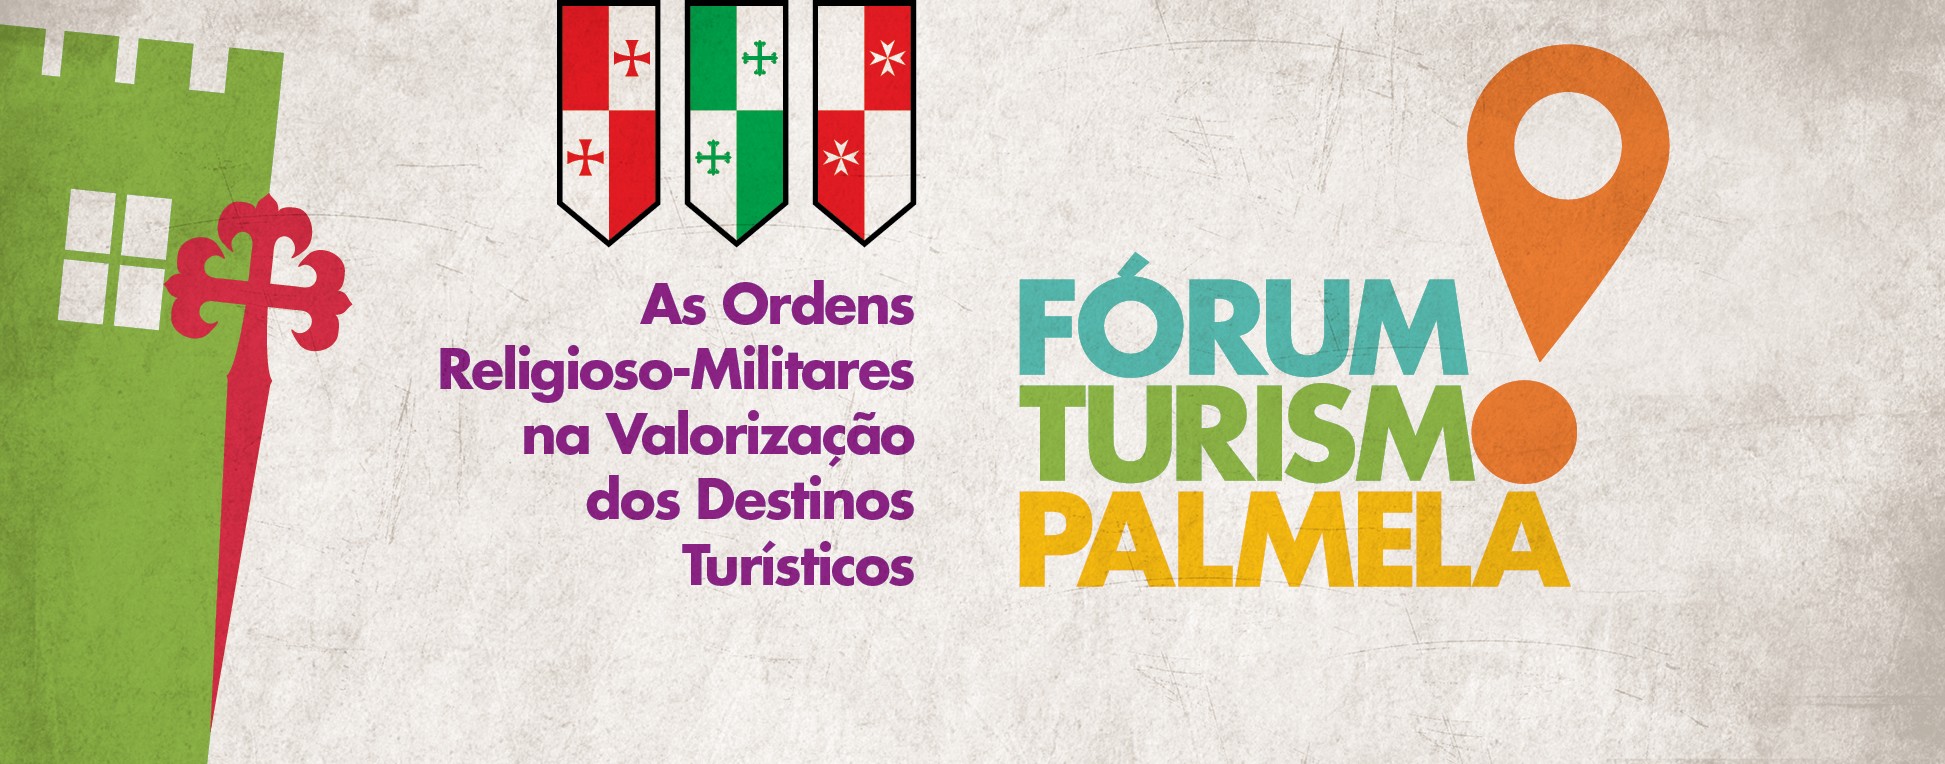 Fórum Turismo Palmela 2019 está a chegar!